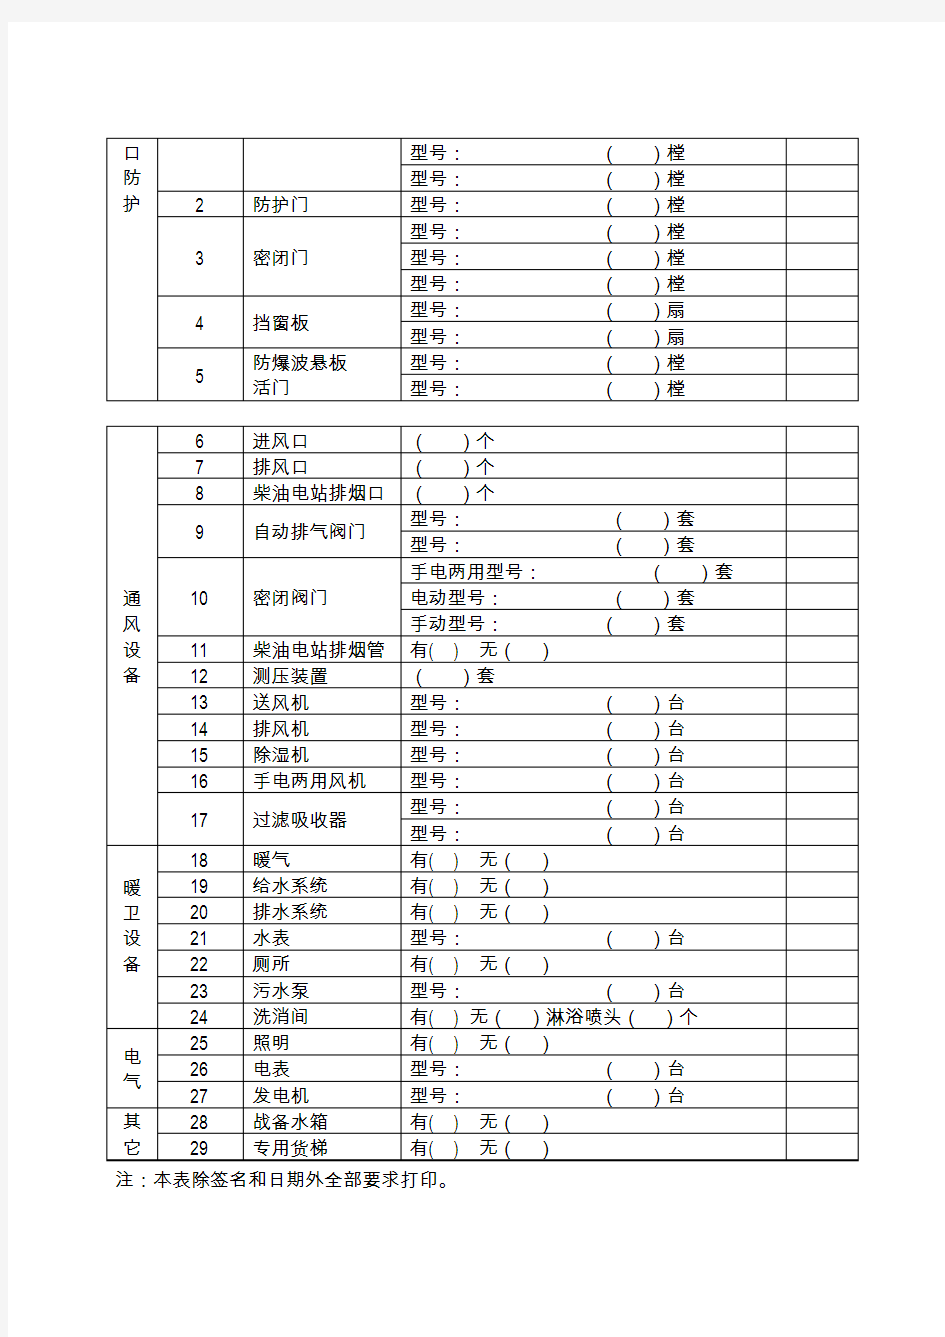 《北京市人防工程信息统计表》